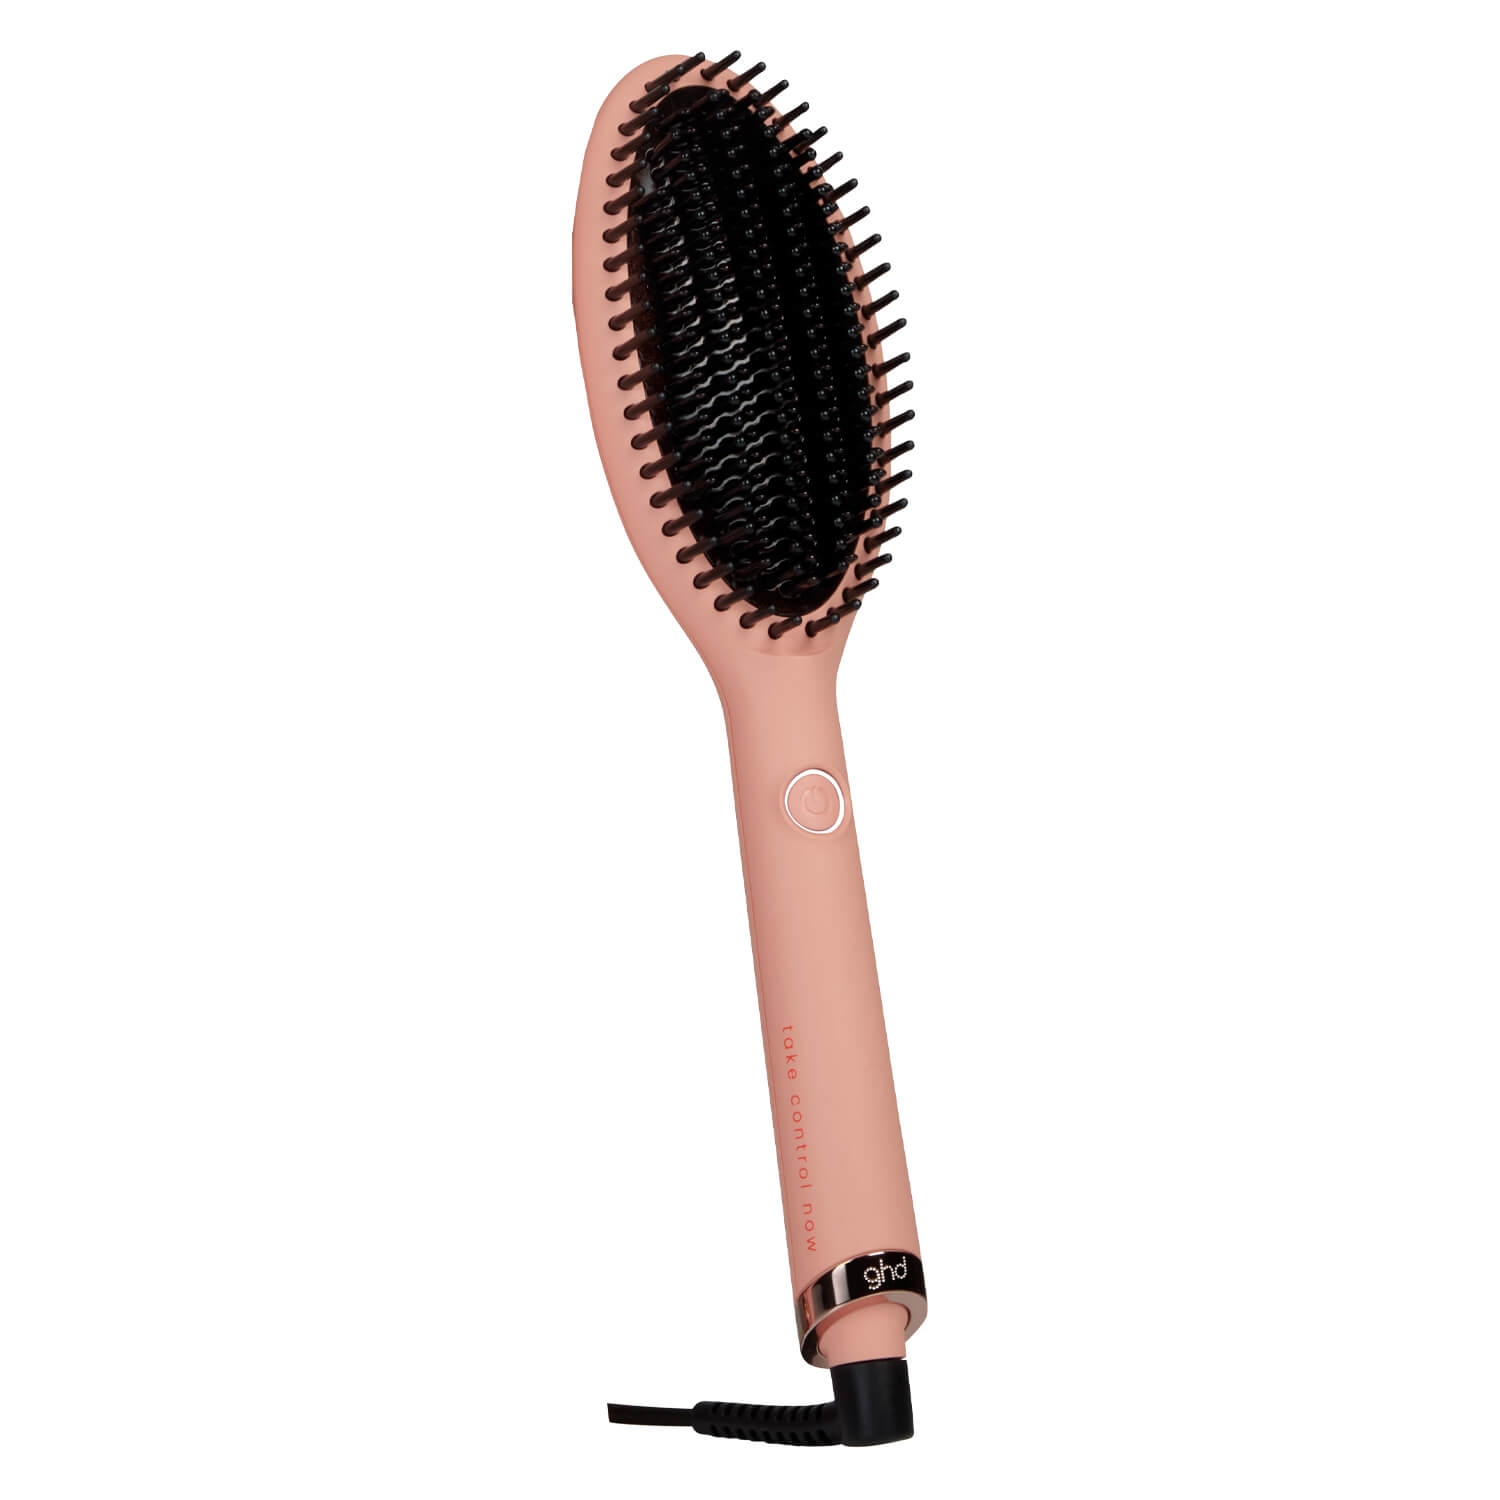 Produktbild von ghd Brushes - Glide Hot Brush Pink Peach Charity Edition